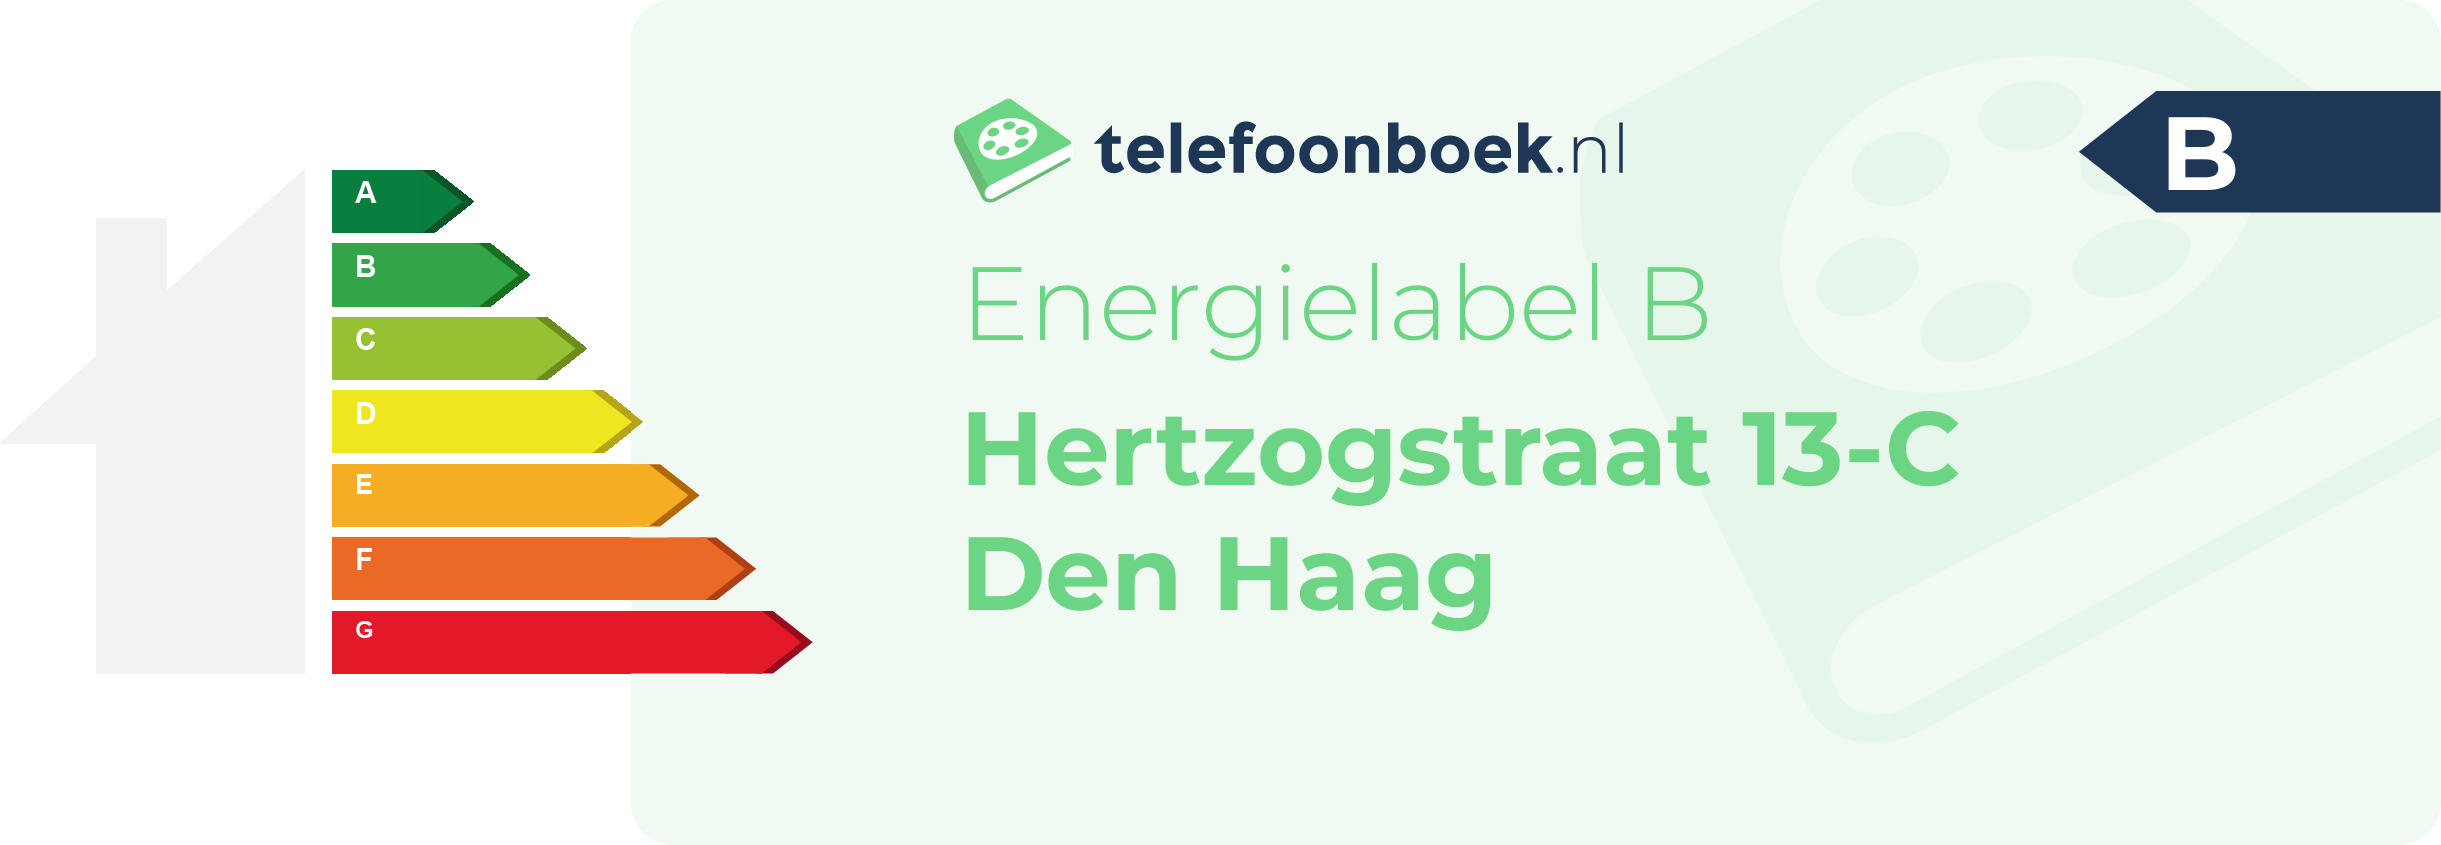 Energielabel Hertzogstraat 13-C Den Haag